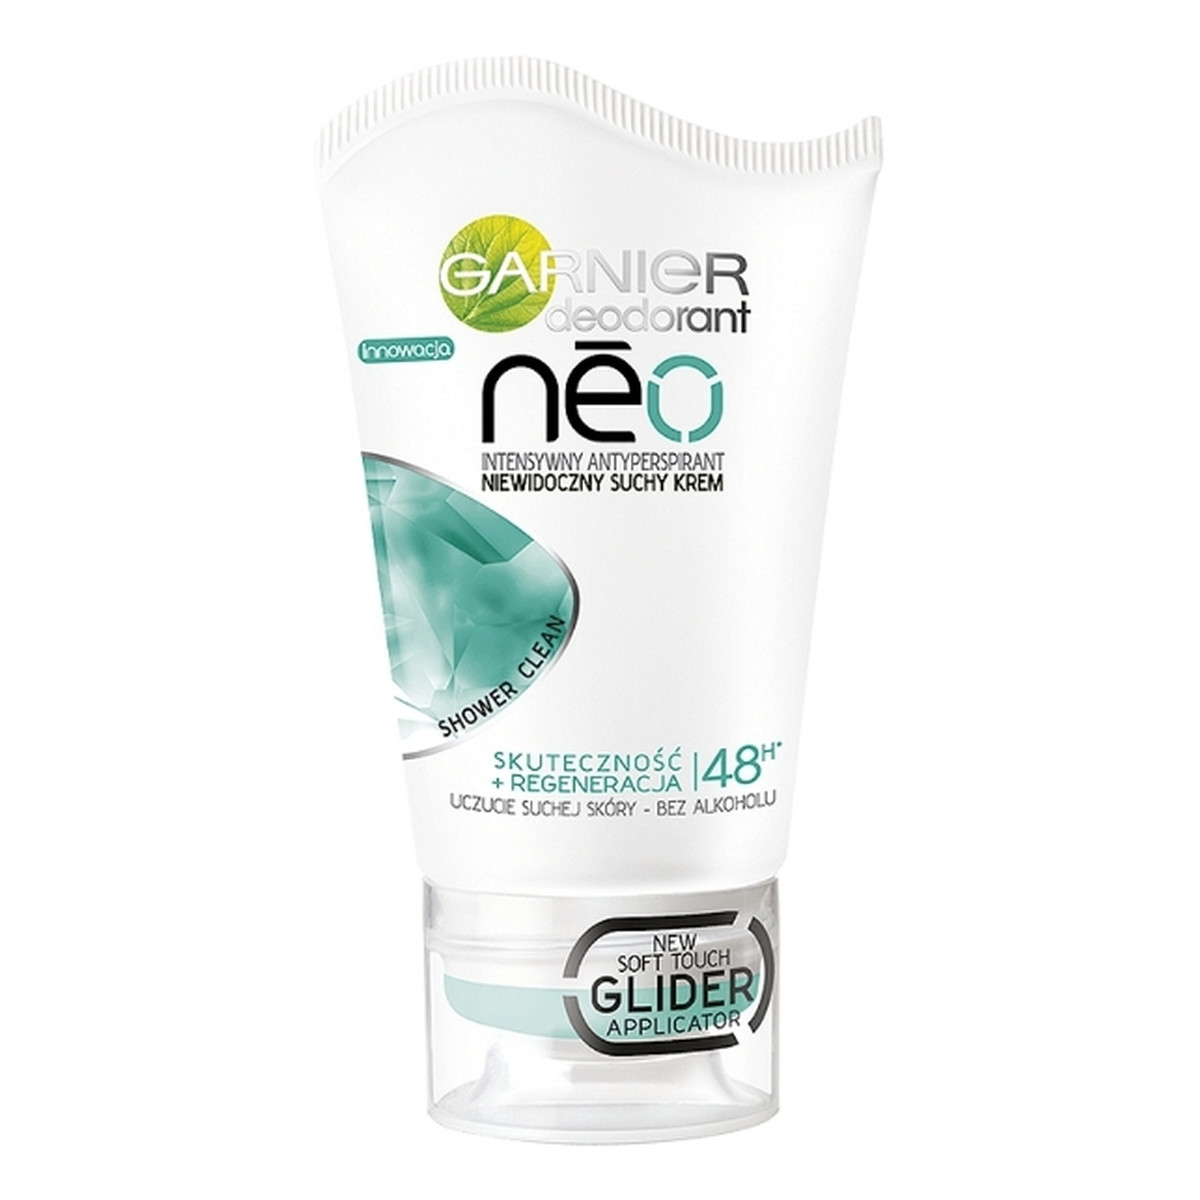 Garnier Neo Shower Clean Antyperspirant w Suchym Kremie 40ml